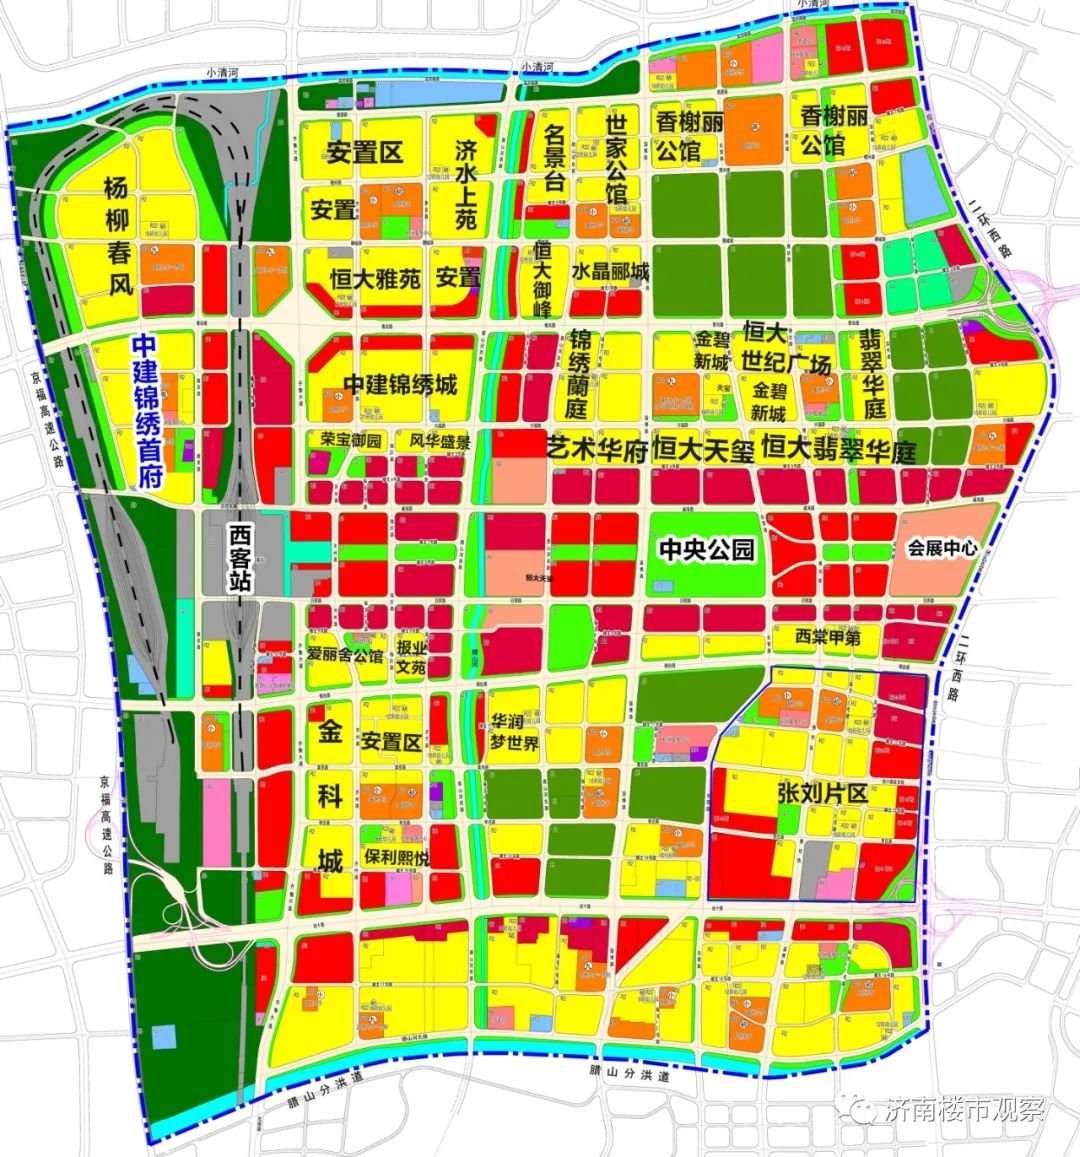 济南西部新城规划方案图片